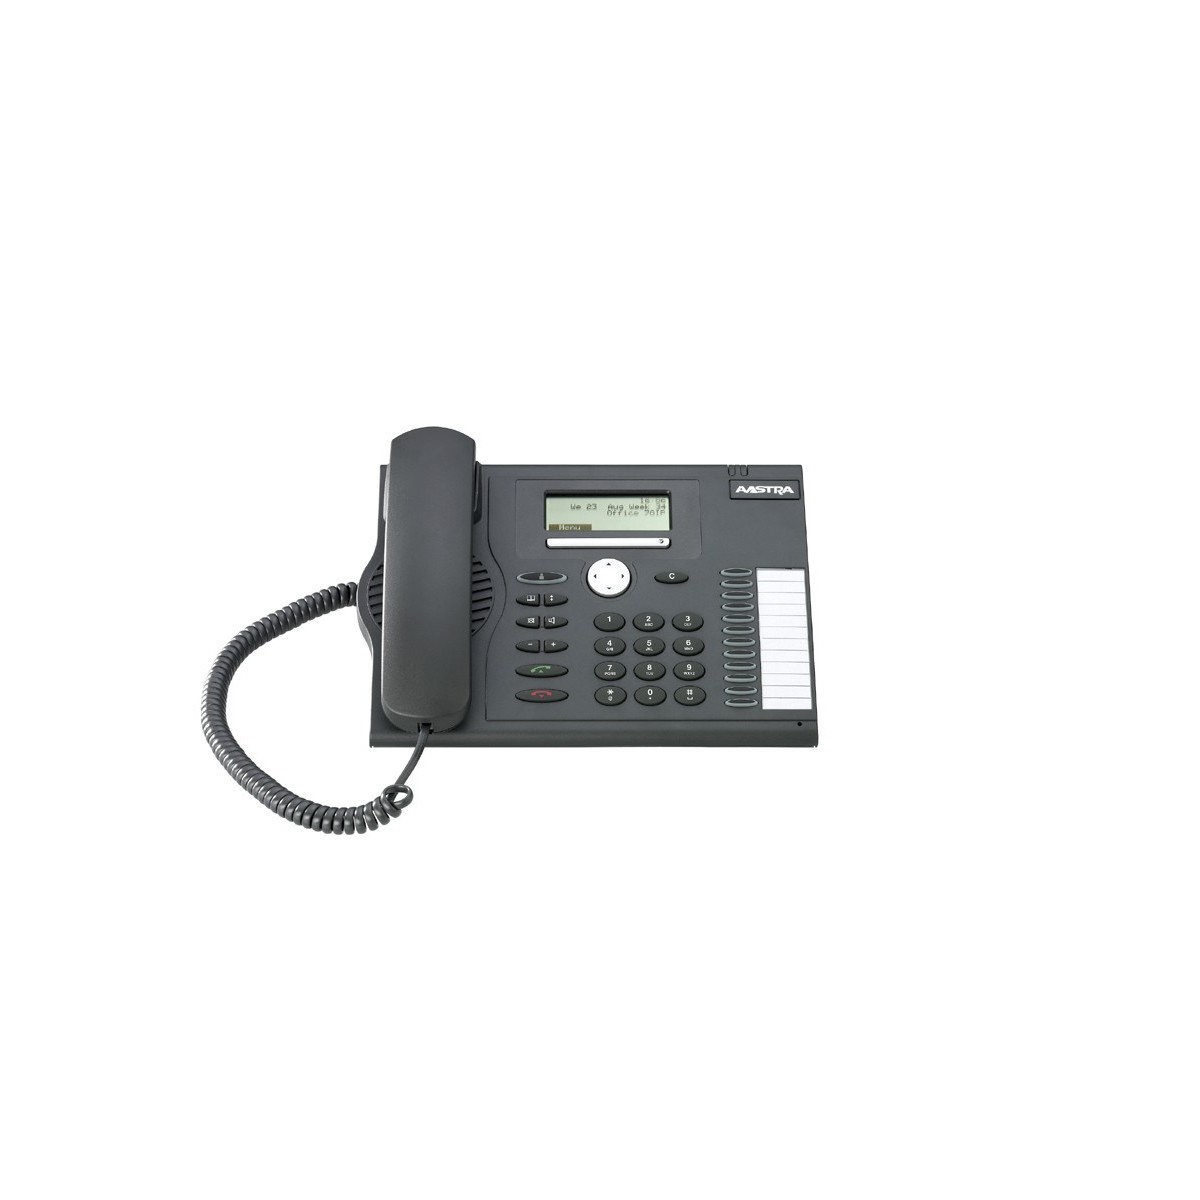 Mitel 5370 - DECT-Telefon - Freisprecheinrichtung - 350 Eintragungen - SMS (Kurznachrichtendienst) - Anthrazit